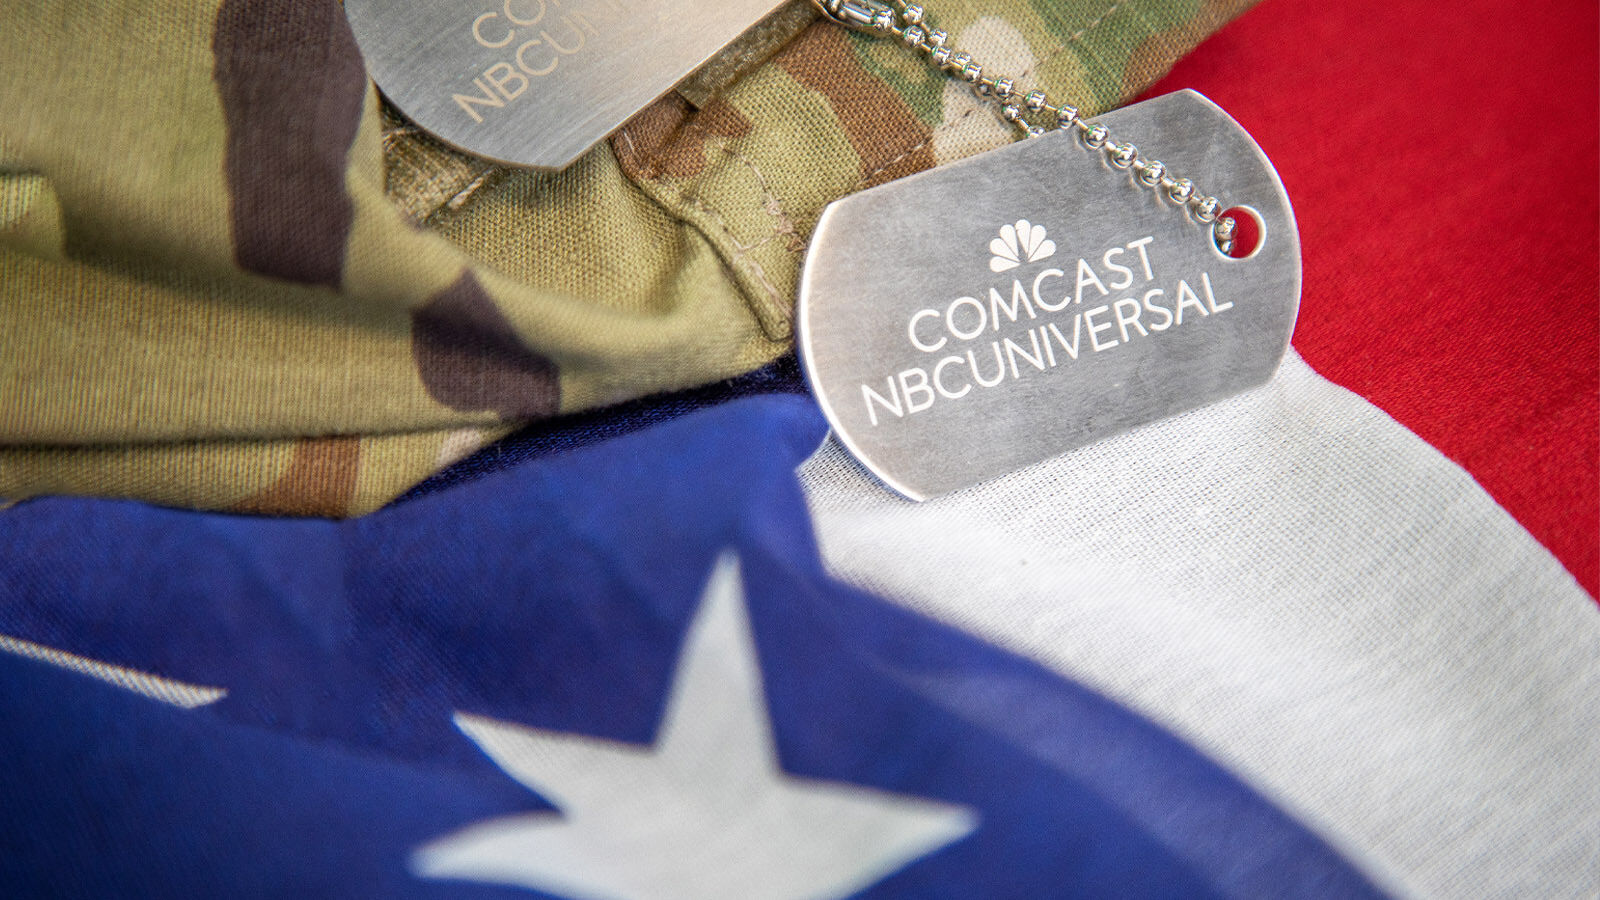 Comcast Celebrates Military Appreciation Month